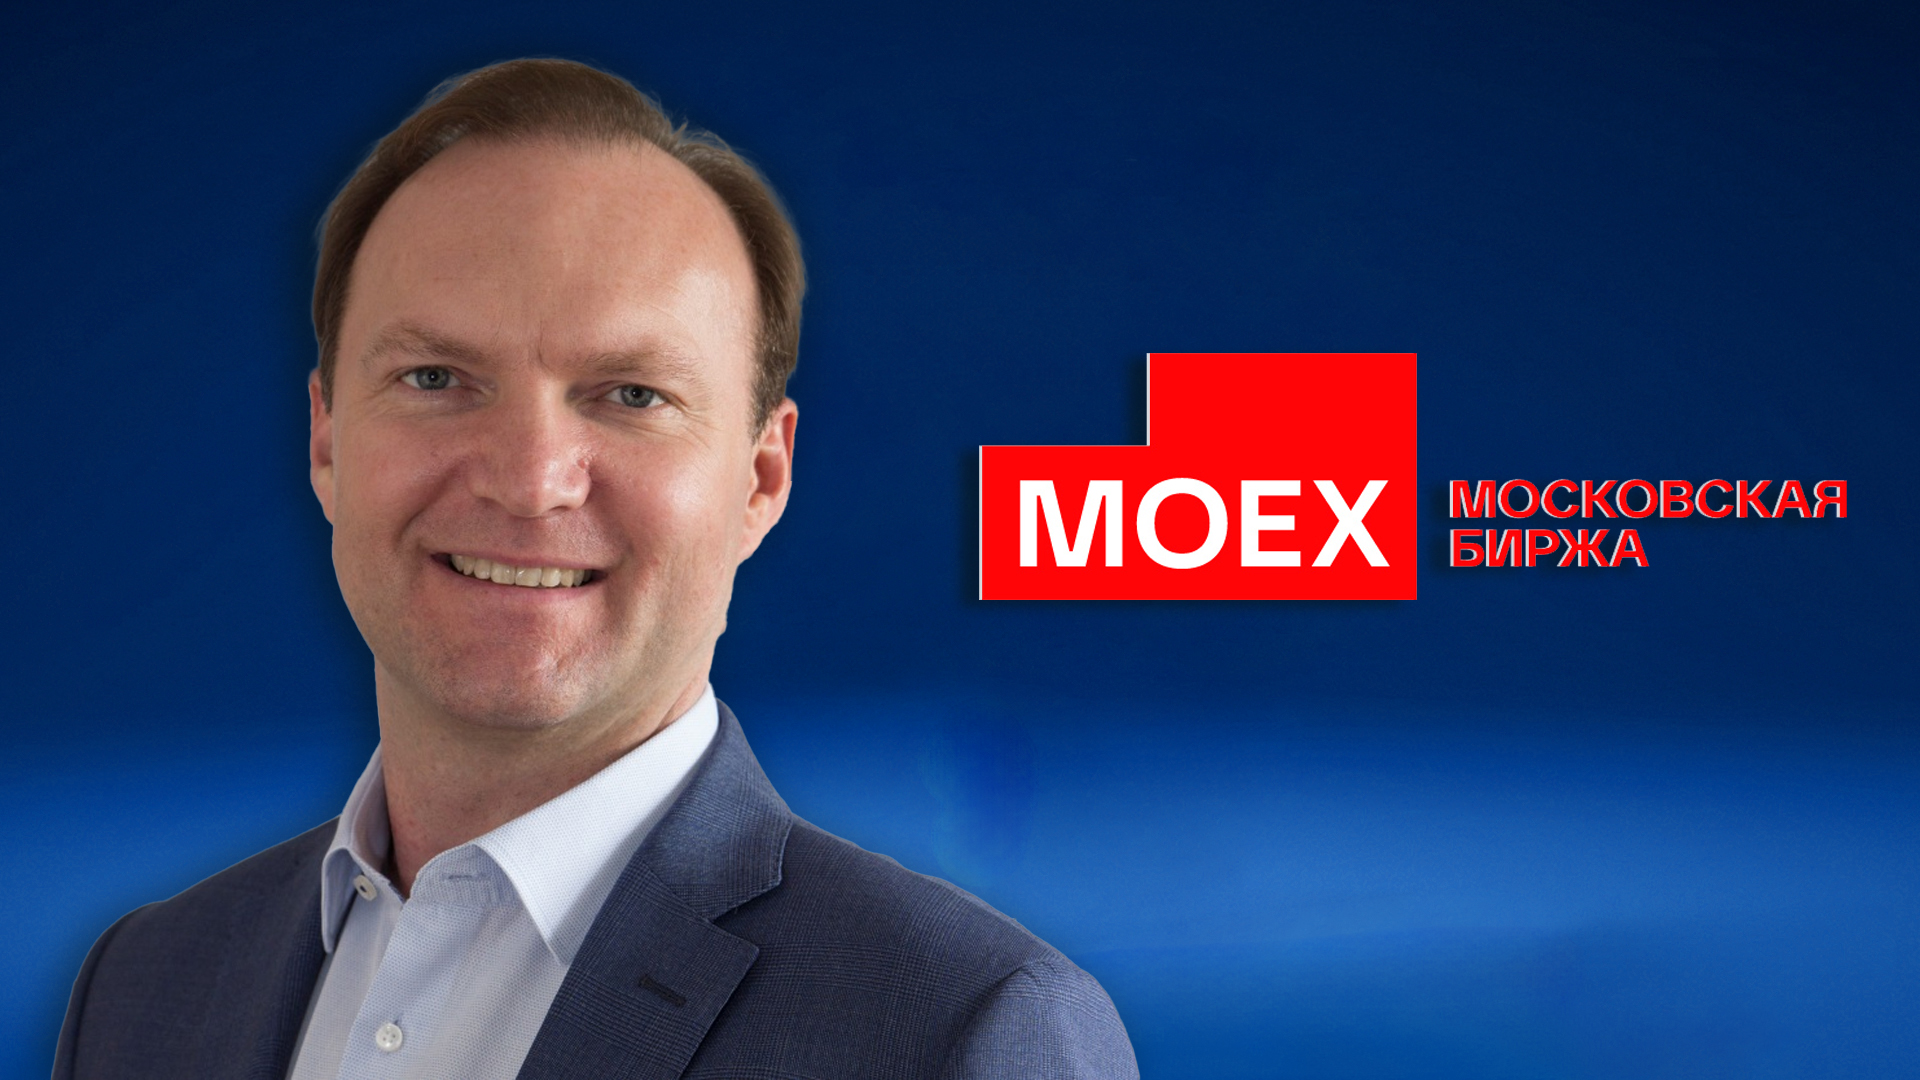 Интервью с членом правления, управляющим директором по информационным технологиям Московской биржи (Moex Group) Андреем Буриловым